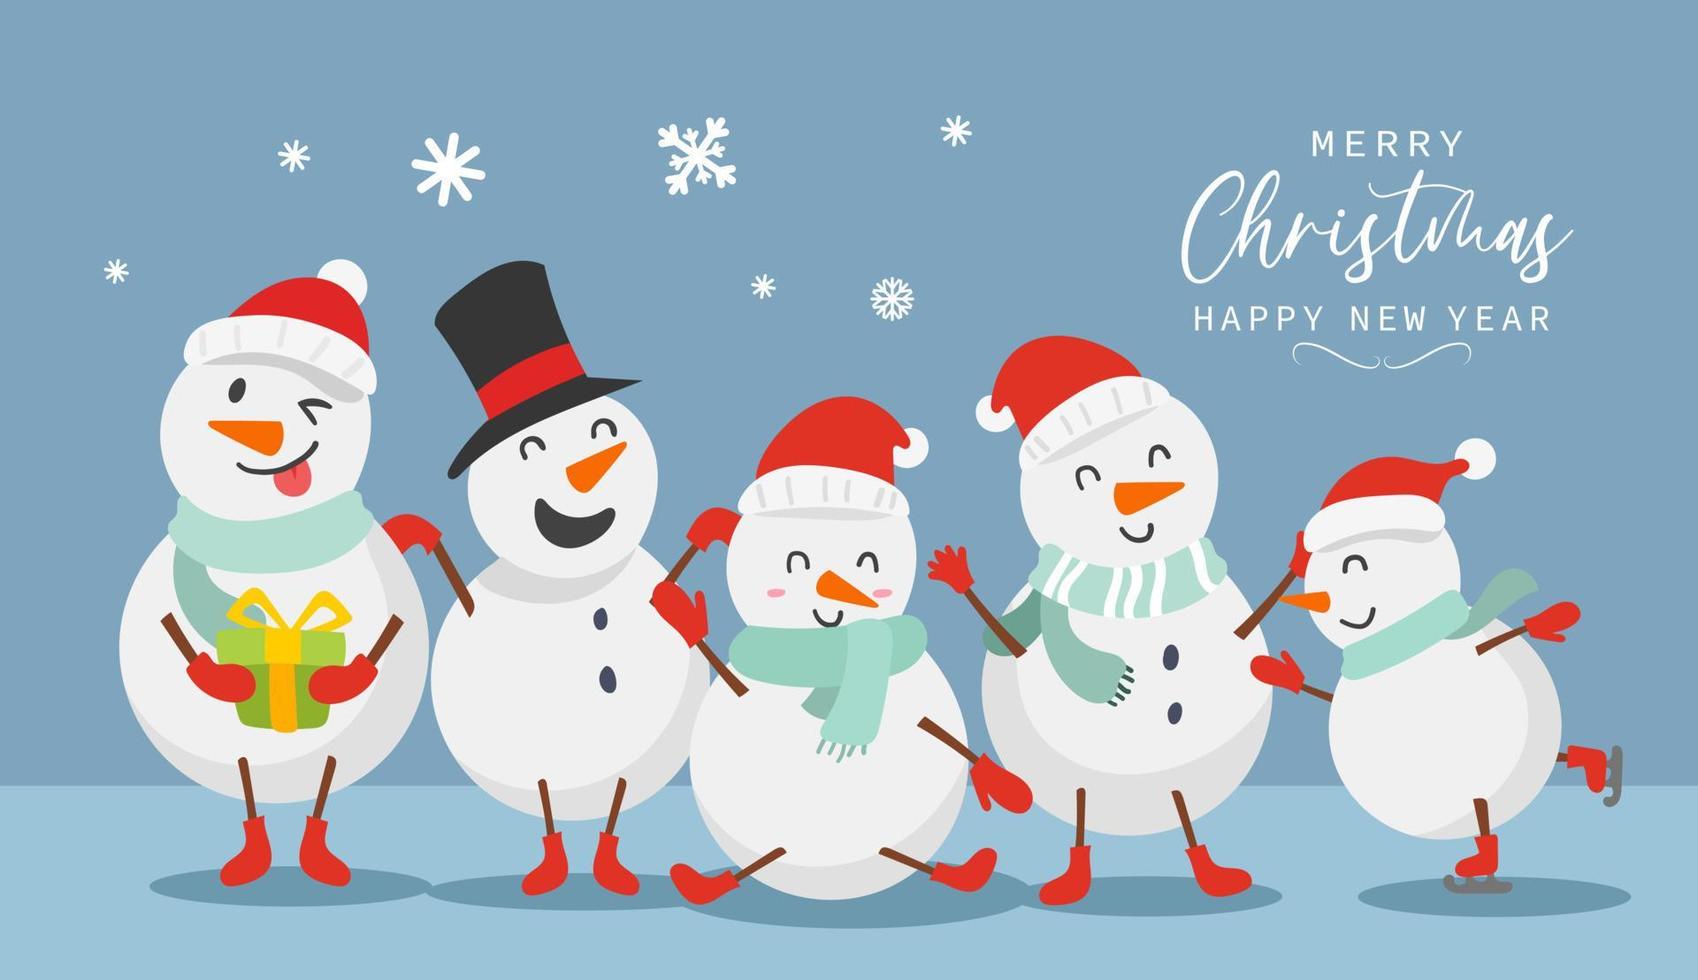 feliz navidad y feliz año nuevo tarjeta de felicitación con lindo muñeco de nieve divertido y feliz diseño de personajes en estilo plano. ilustración vectorial vector